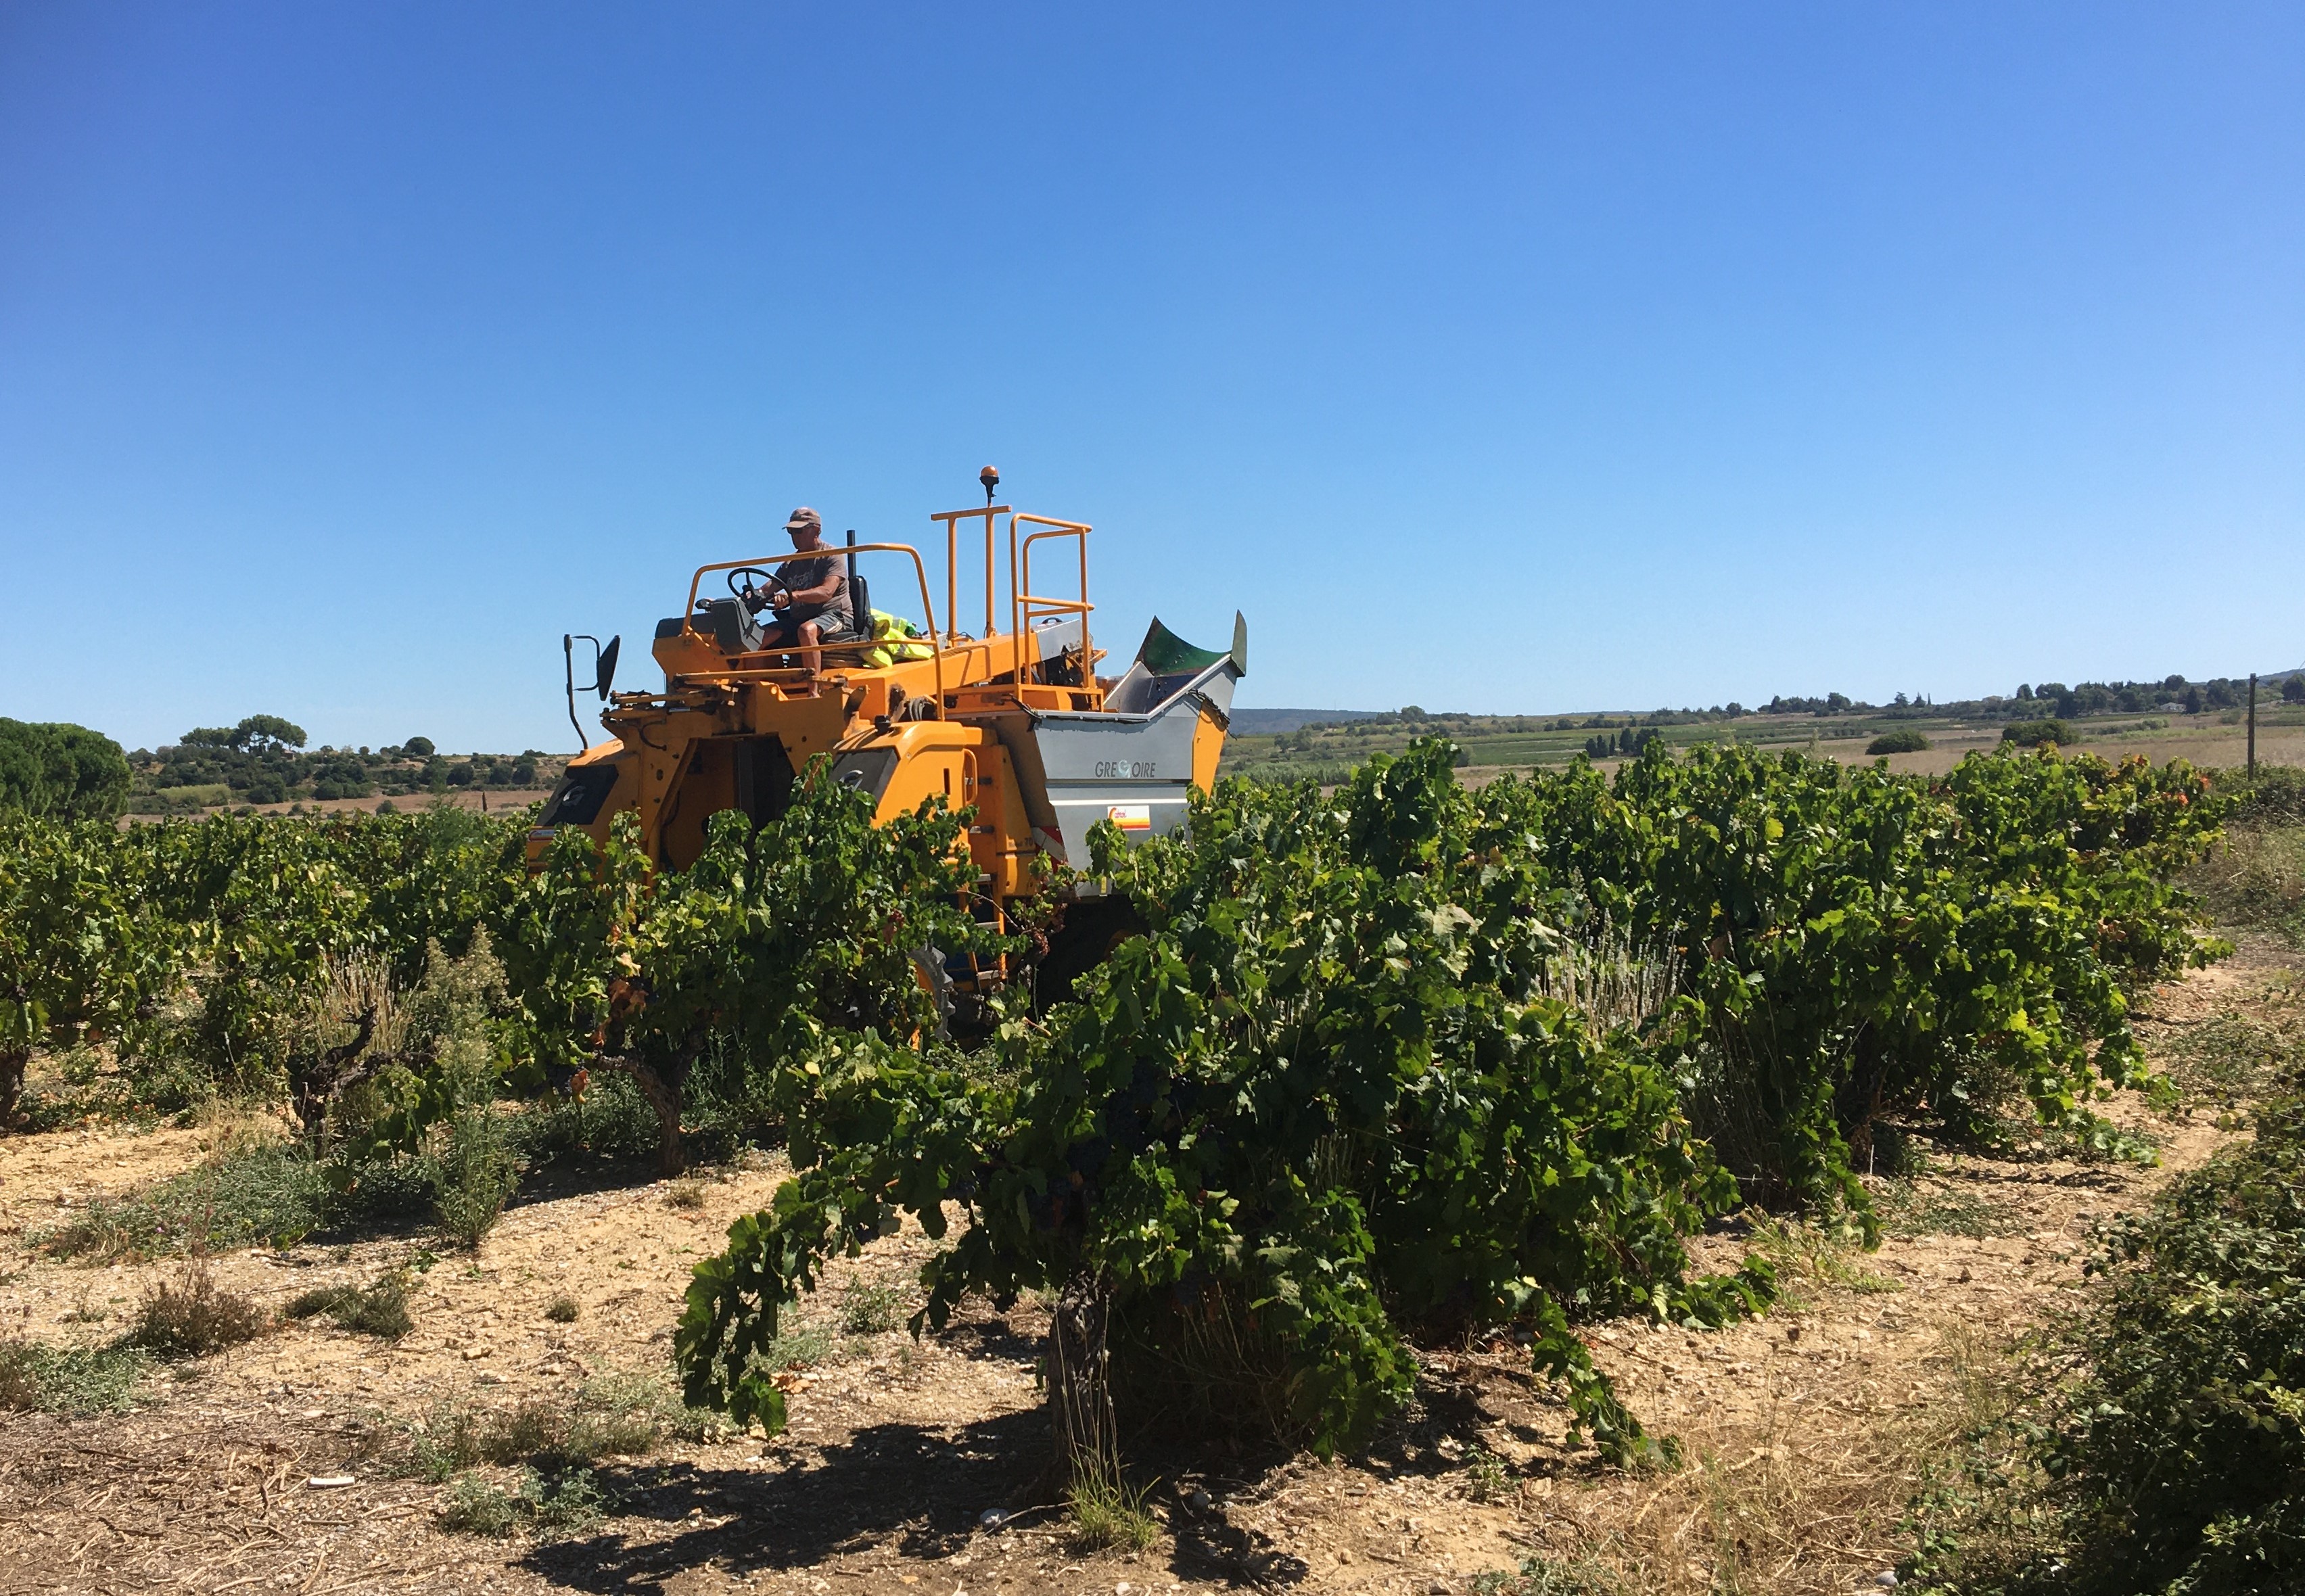 Le Sitevi mise sur l'innovation technologique pour relever les défis de la filière viticole, malgré la crise